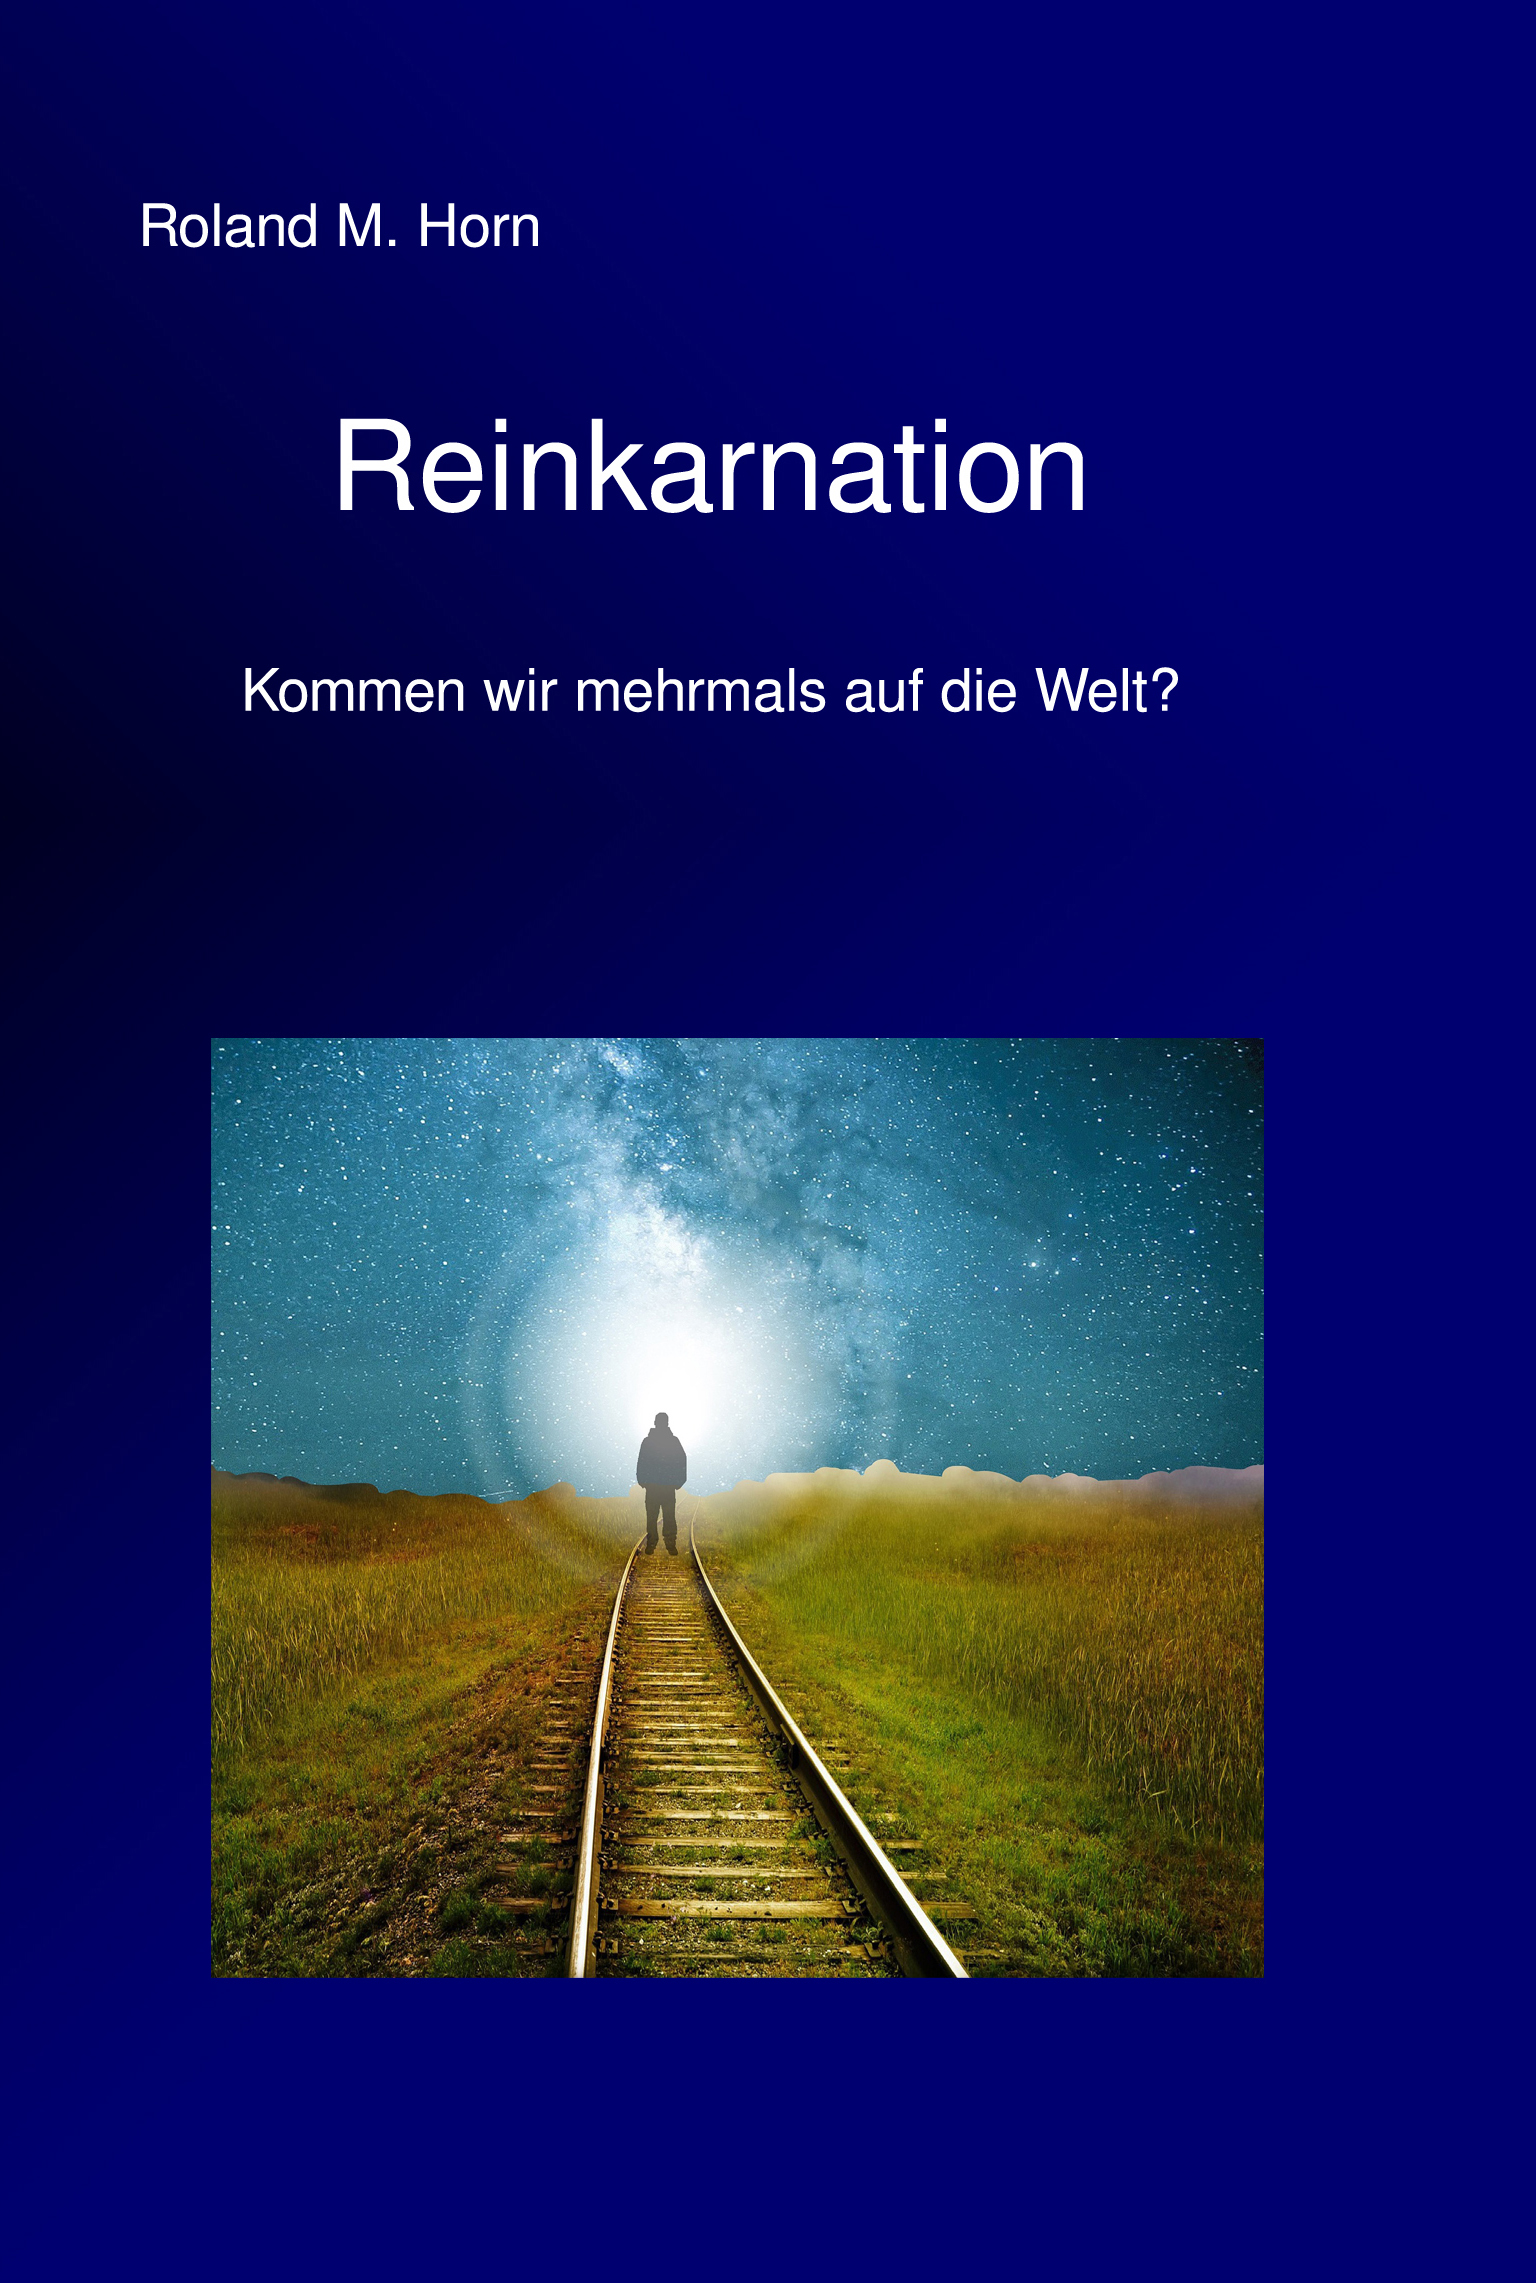 Roland M. Horn: Reinkarnation